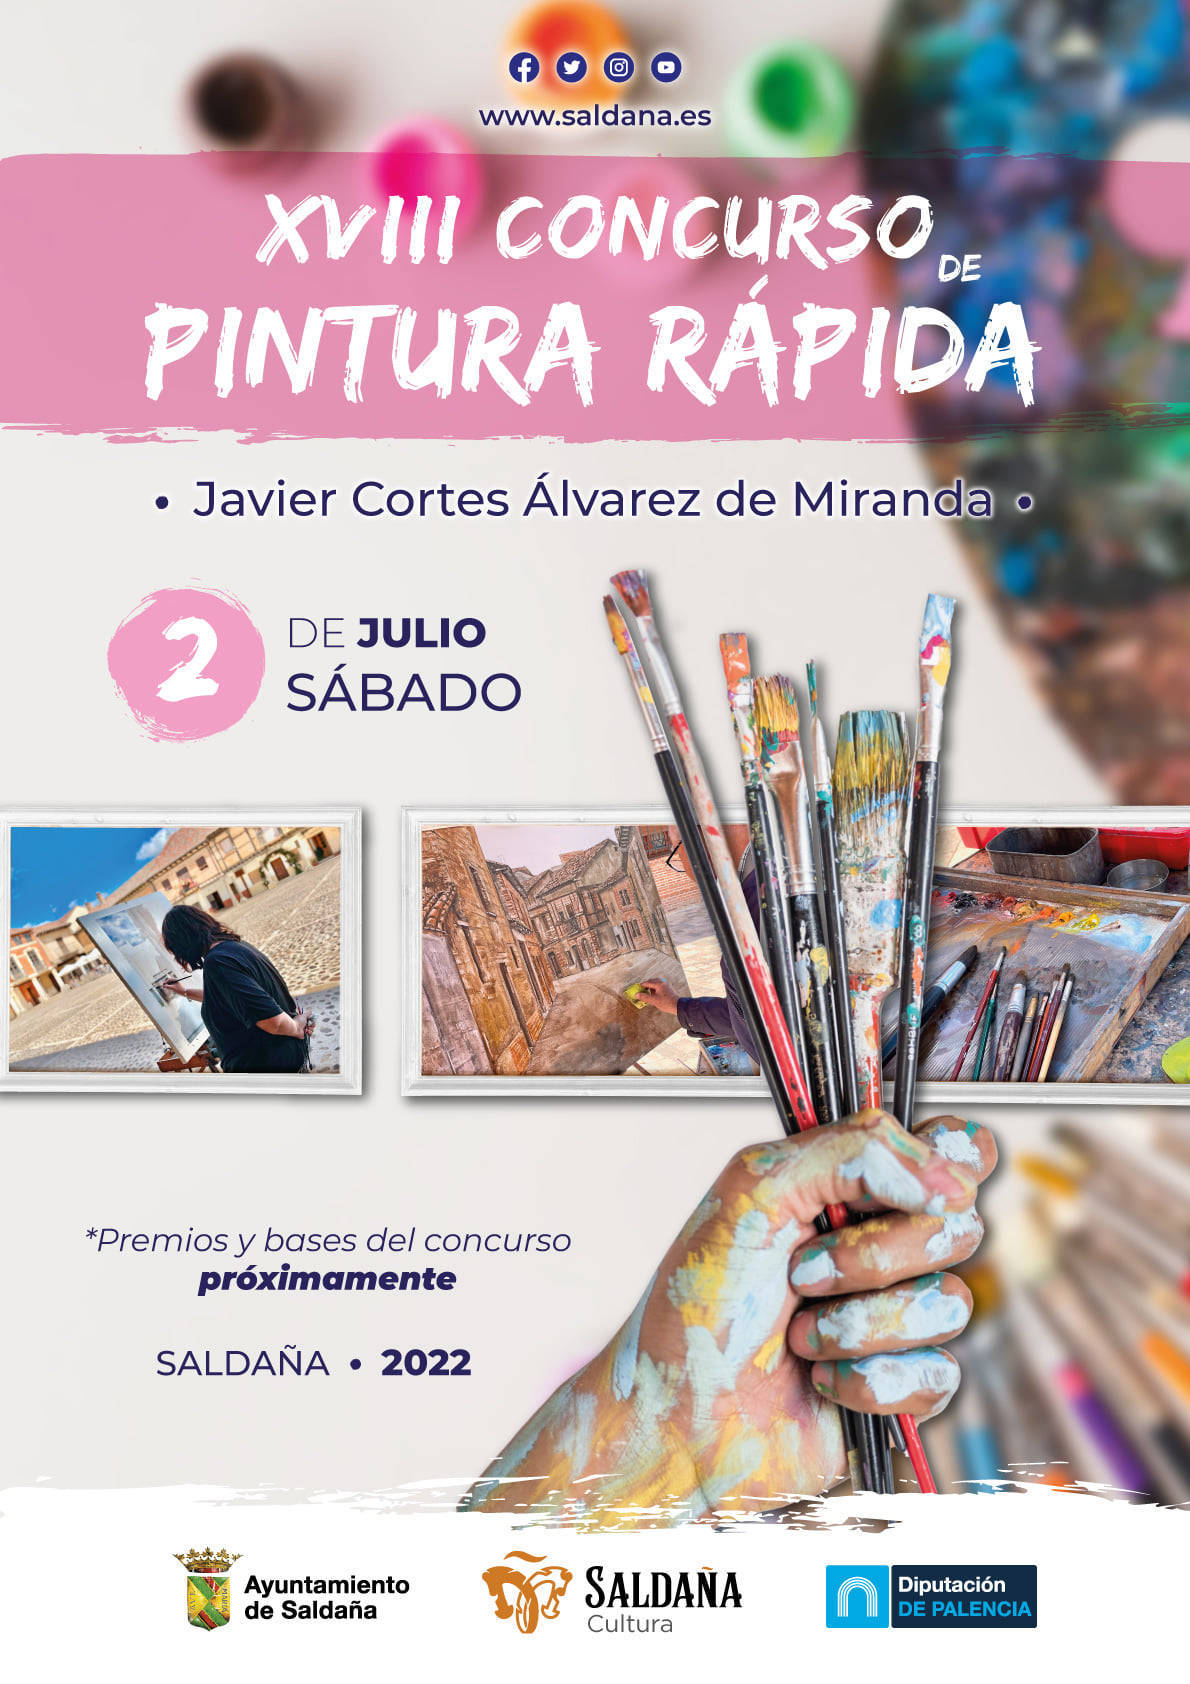 XVIII Concurso de Pintura Rápida Javier Cortes Álvarez de Miranda - Saldaña (Palencia)